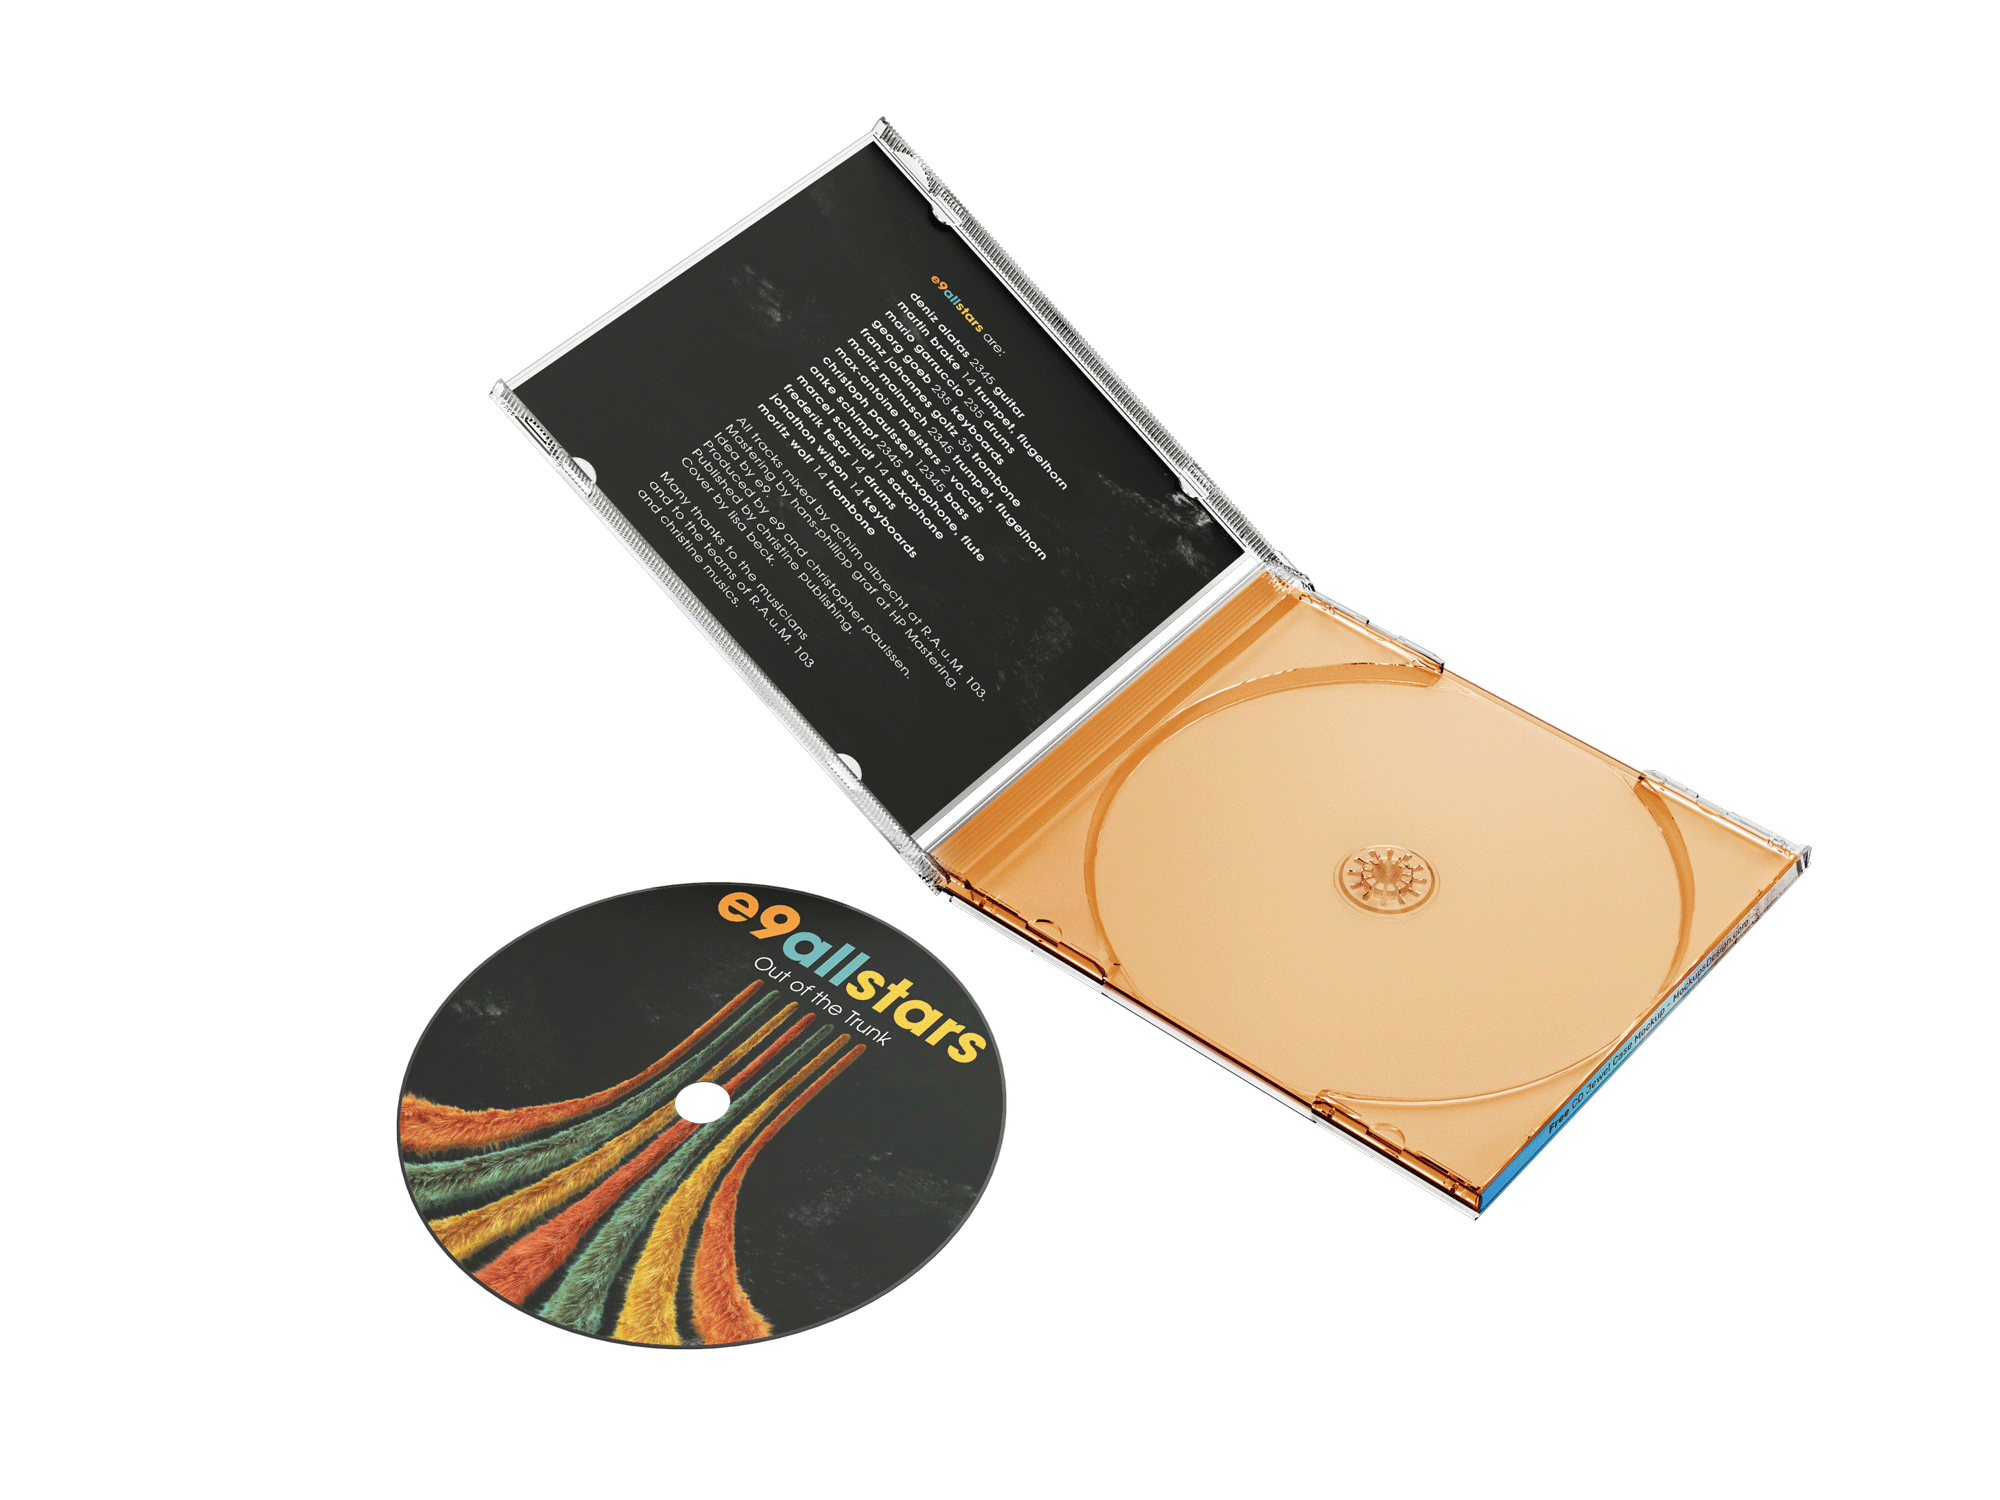 εικόνα του CD - αντιγραφή και εκτύπωση + Jewel θήκη με τετράπλευρο φυλλάδιο και Inlay